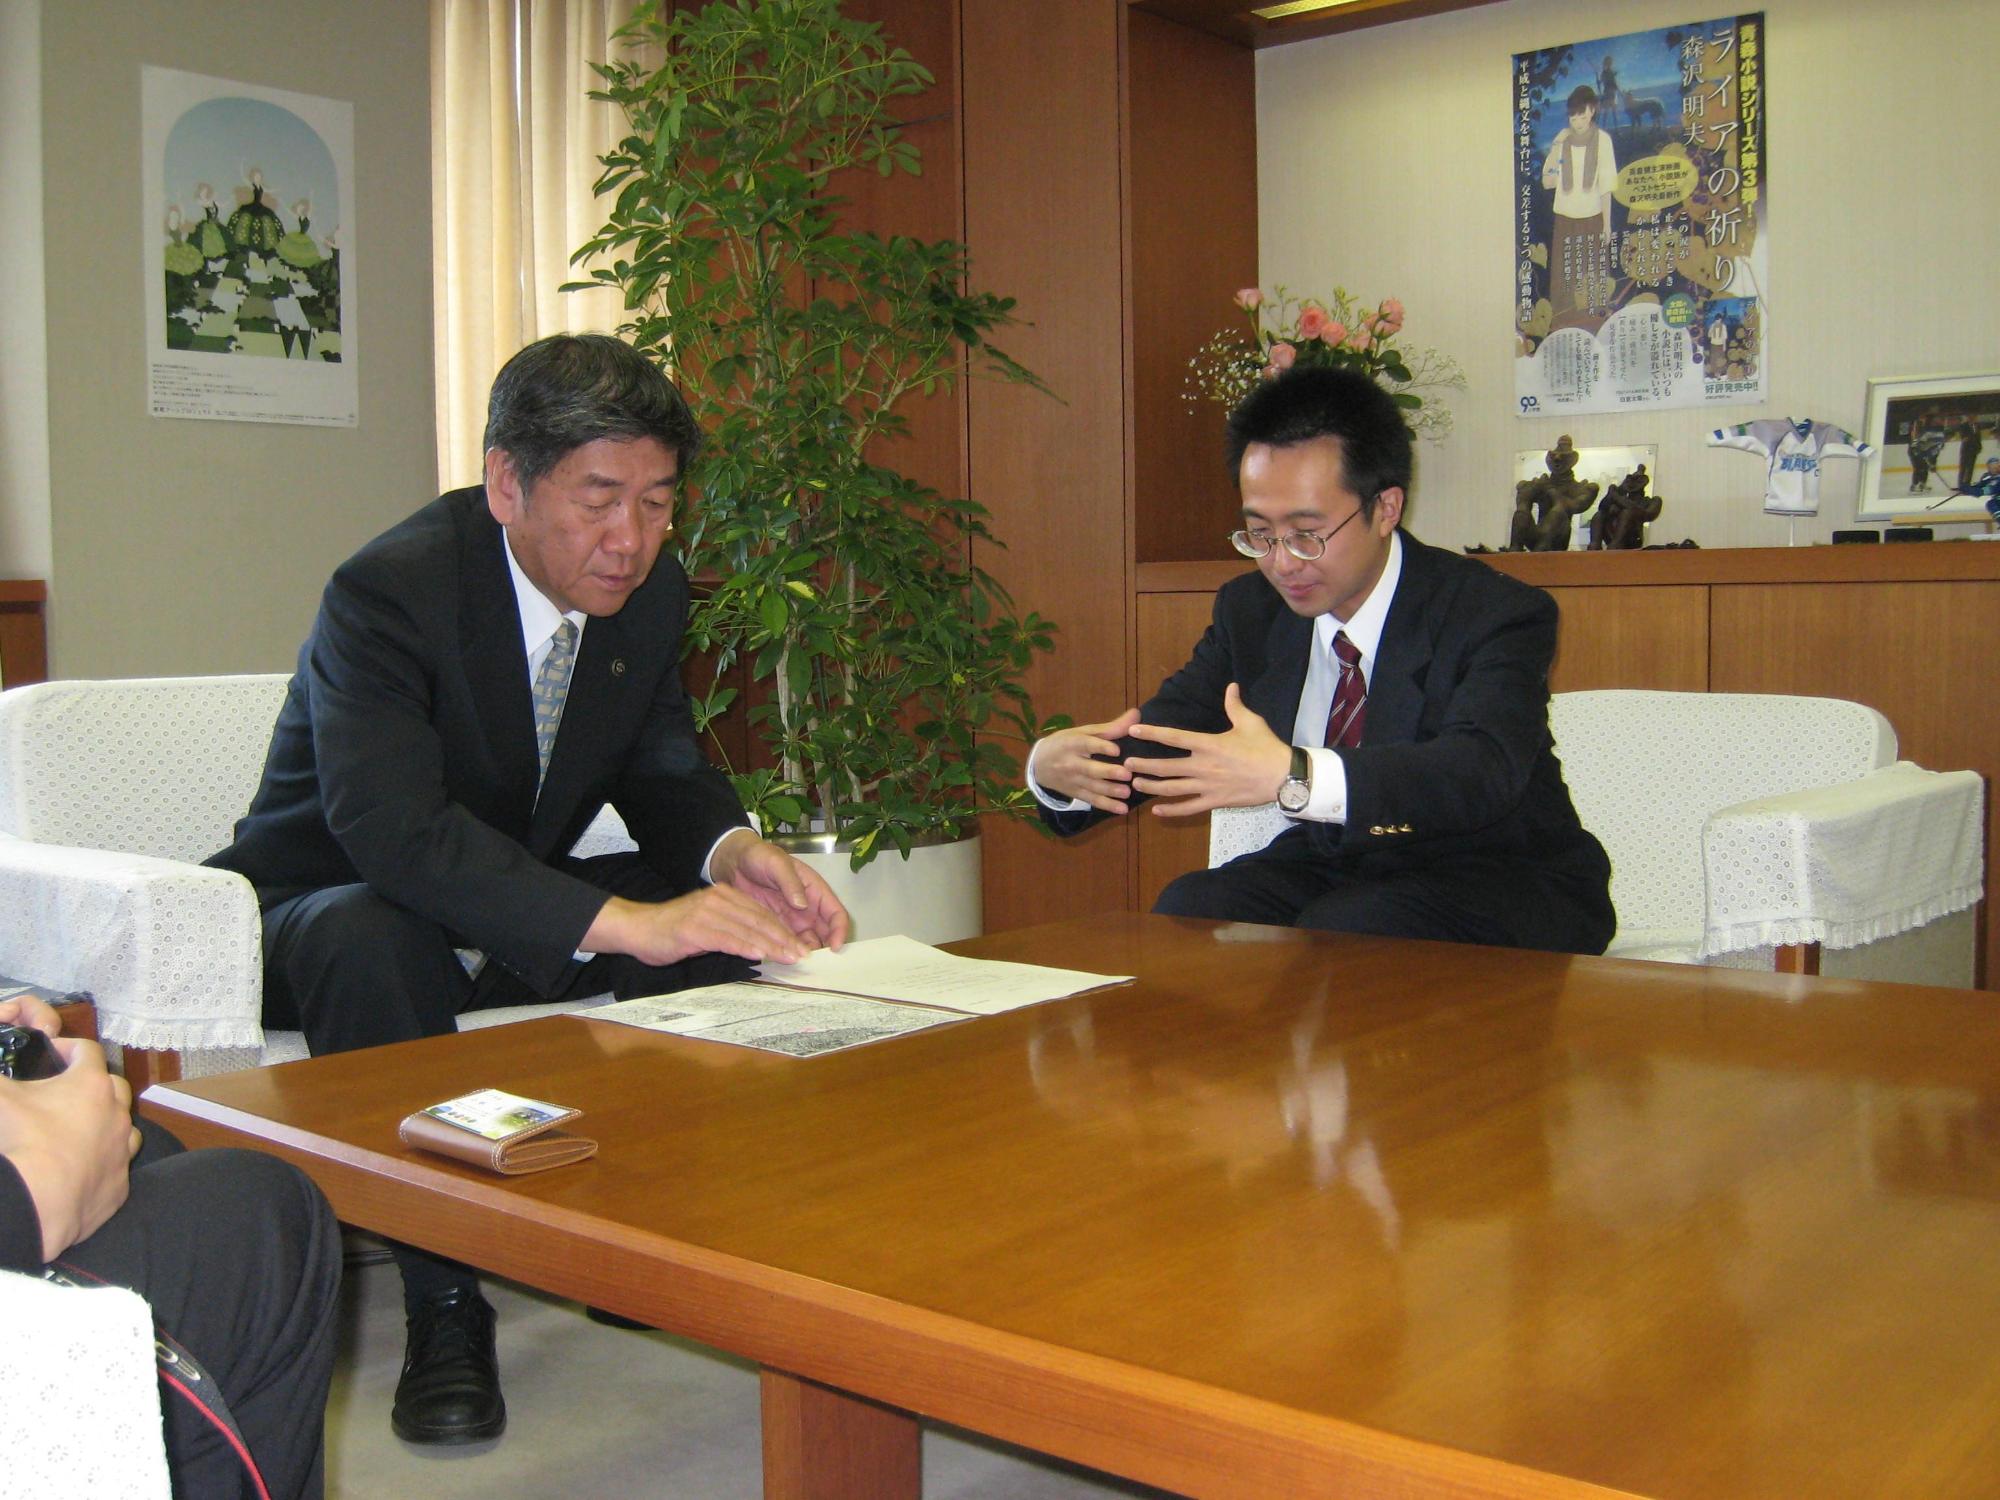 カネタトモユキさんが小林市長に表敬訪問し、会話している写真